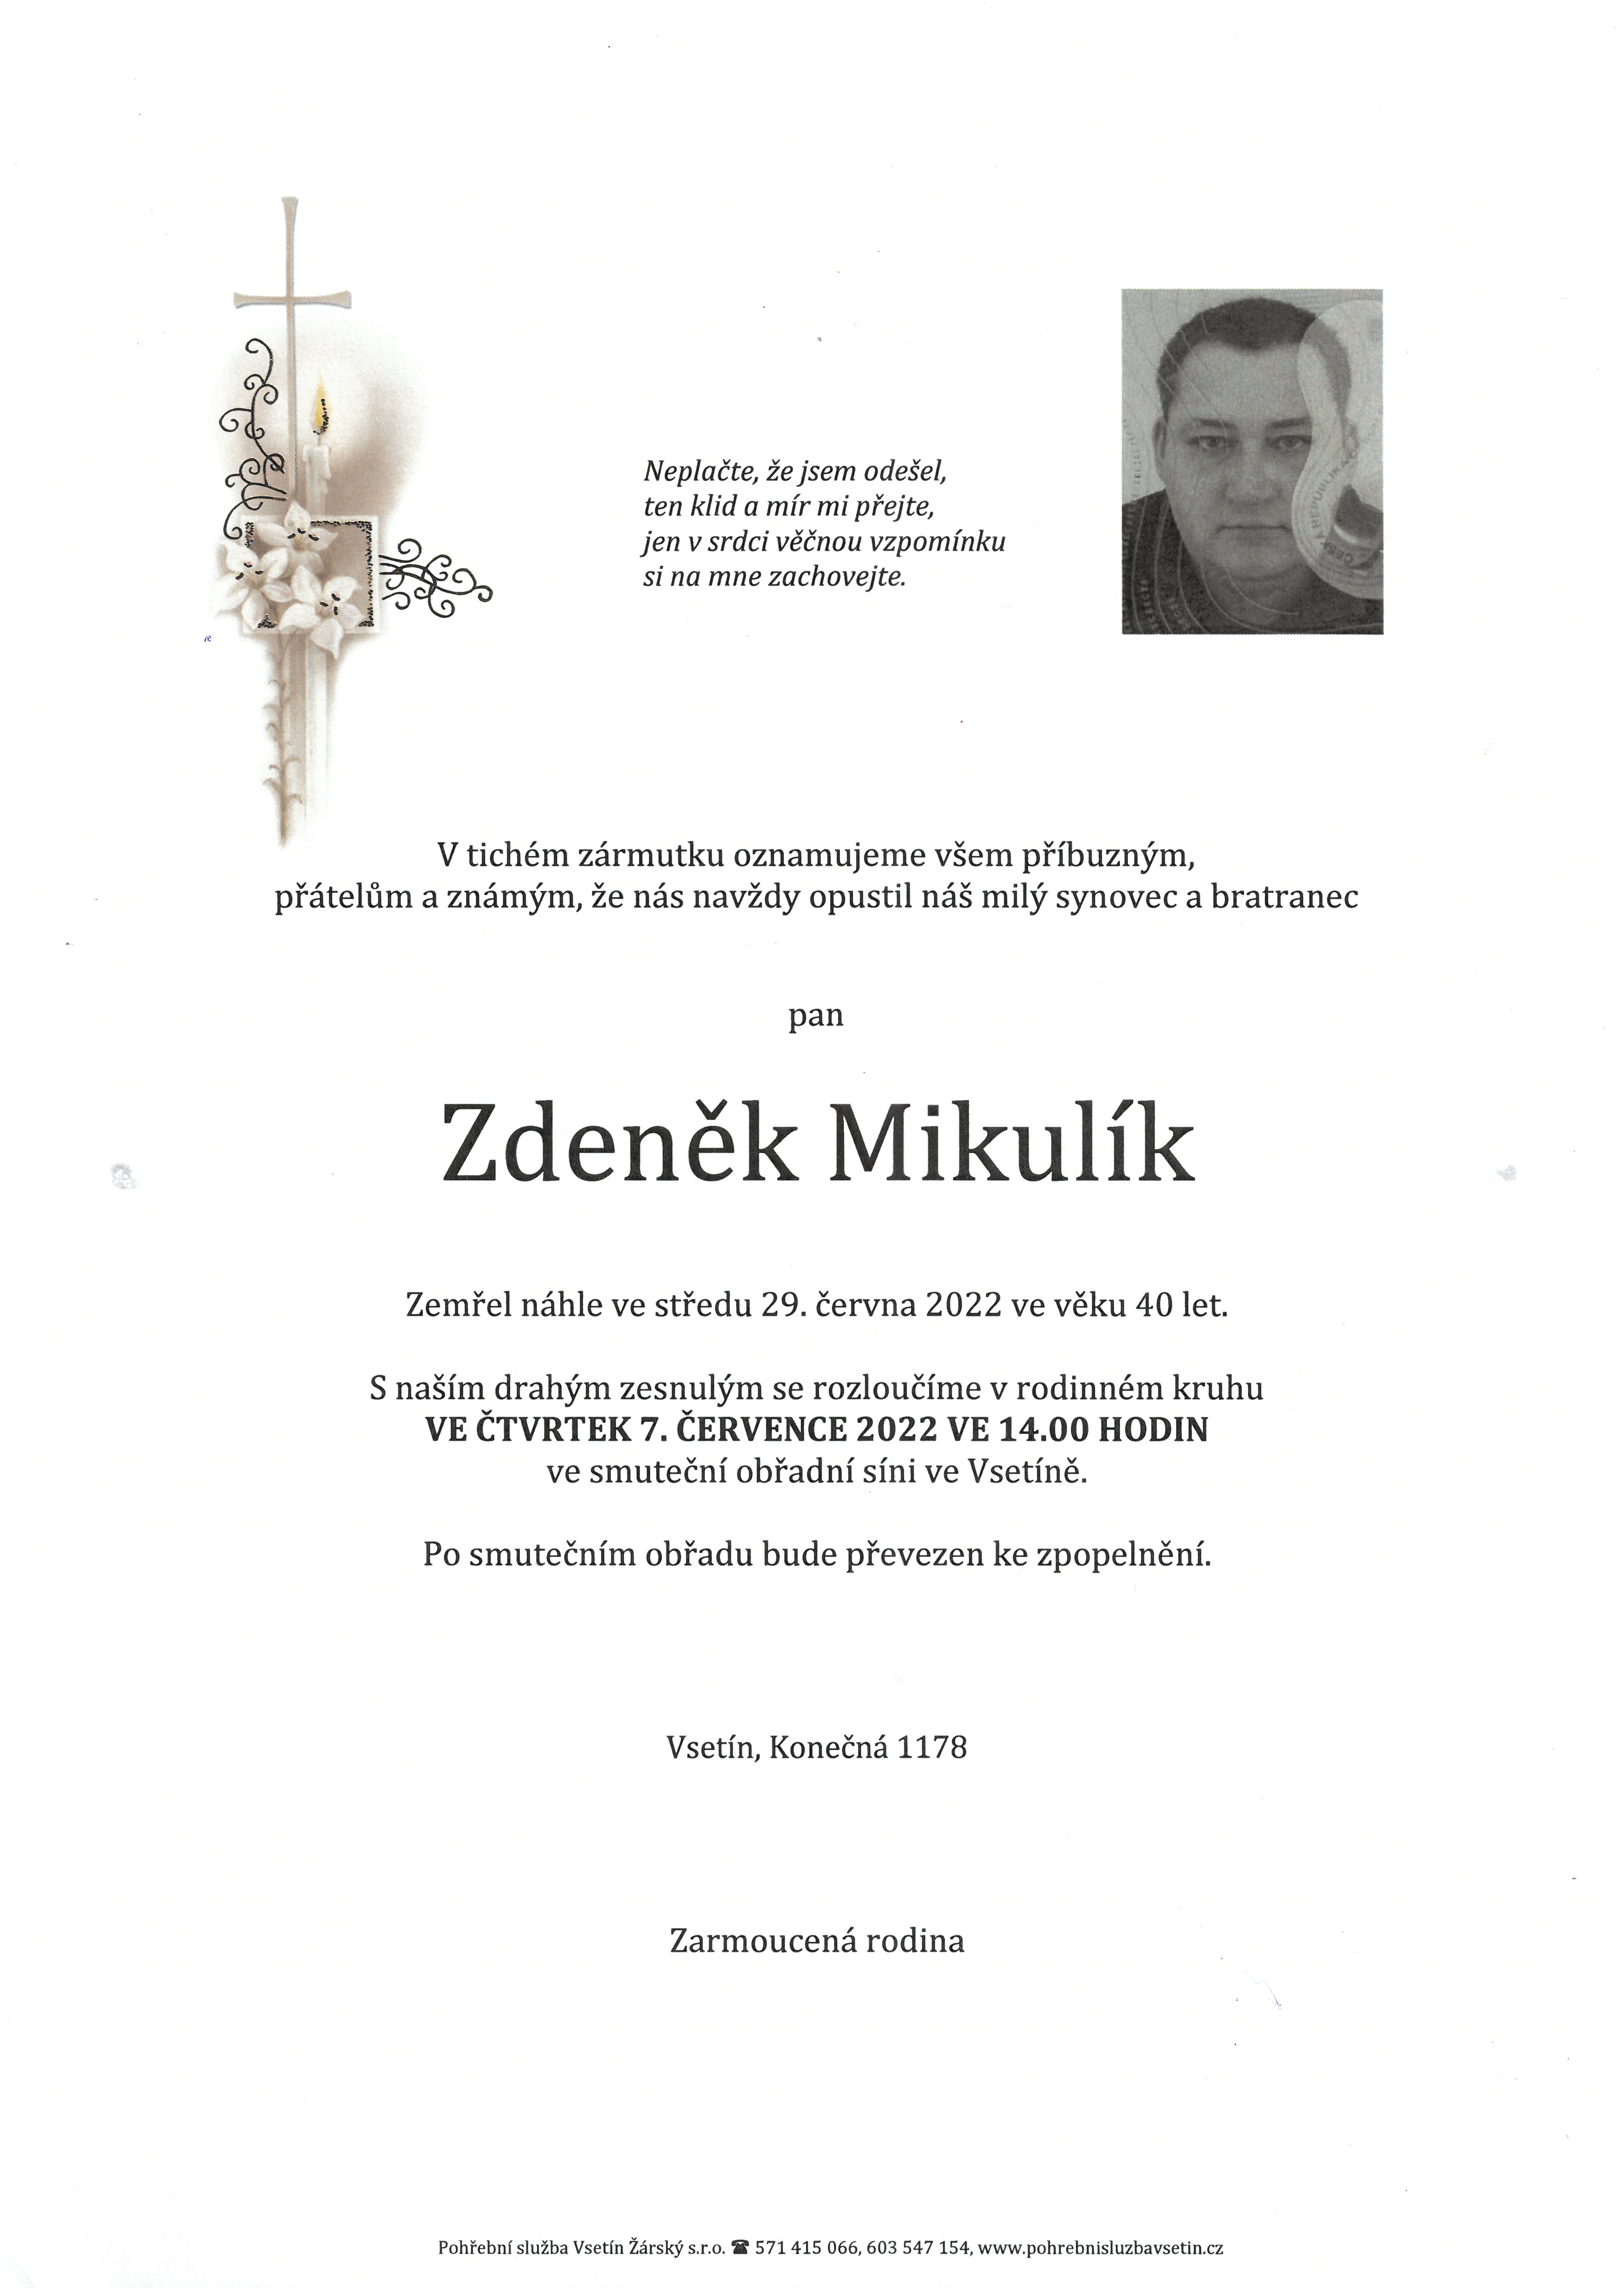 Zdeněk Mikulík